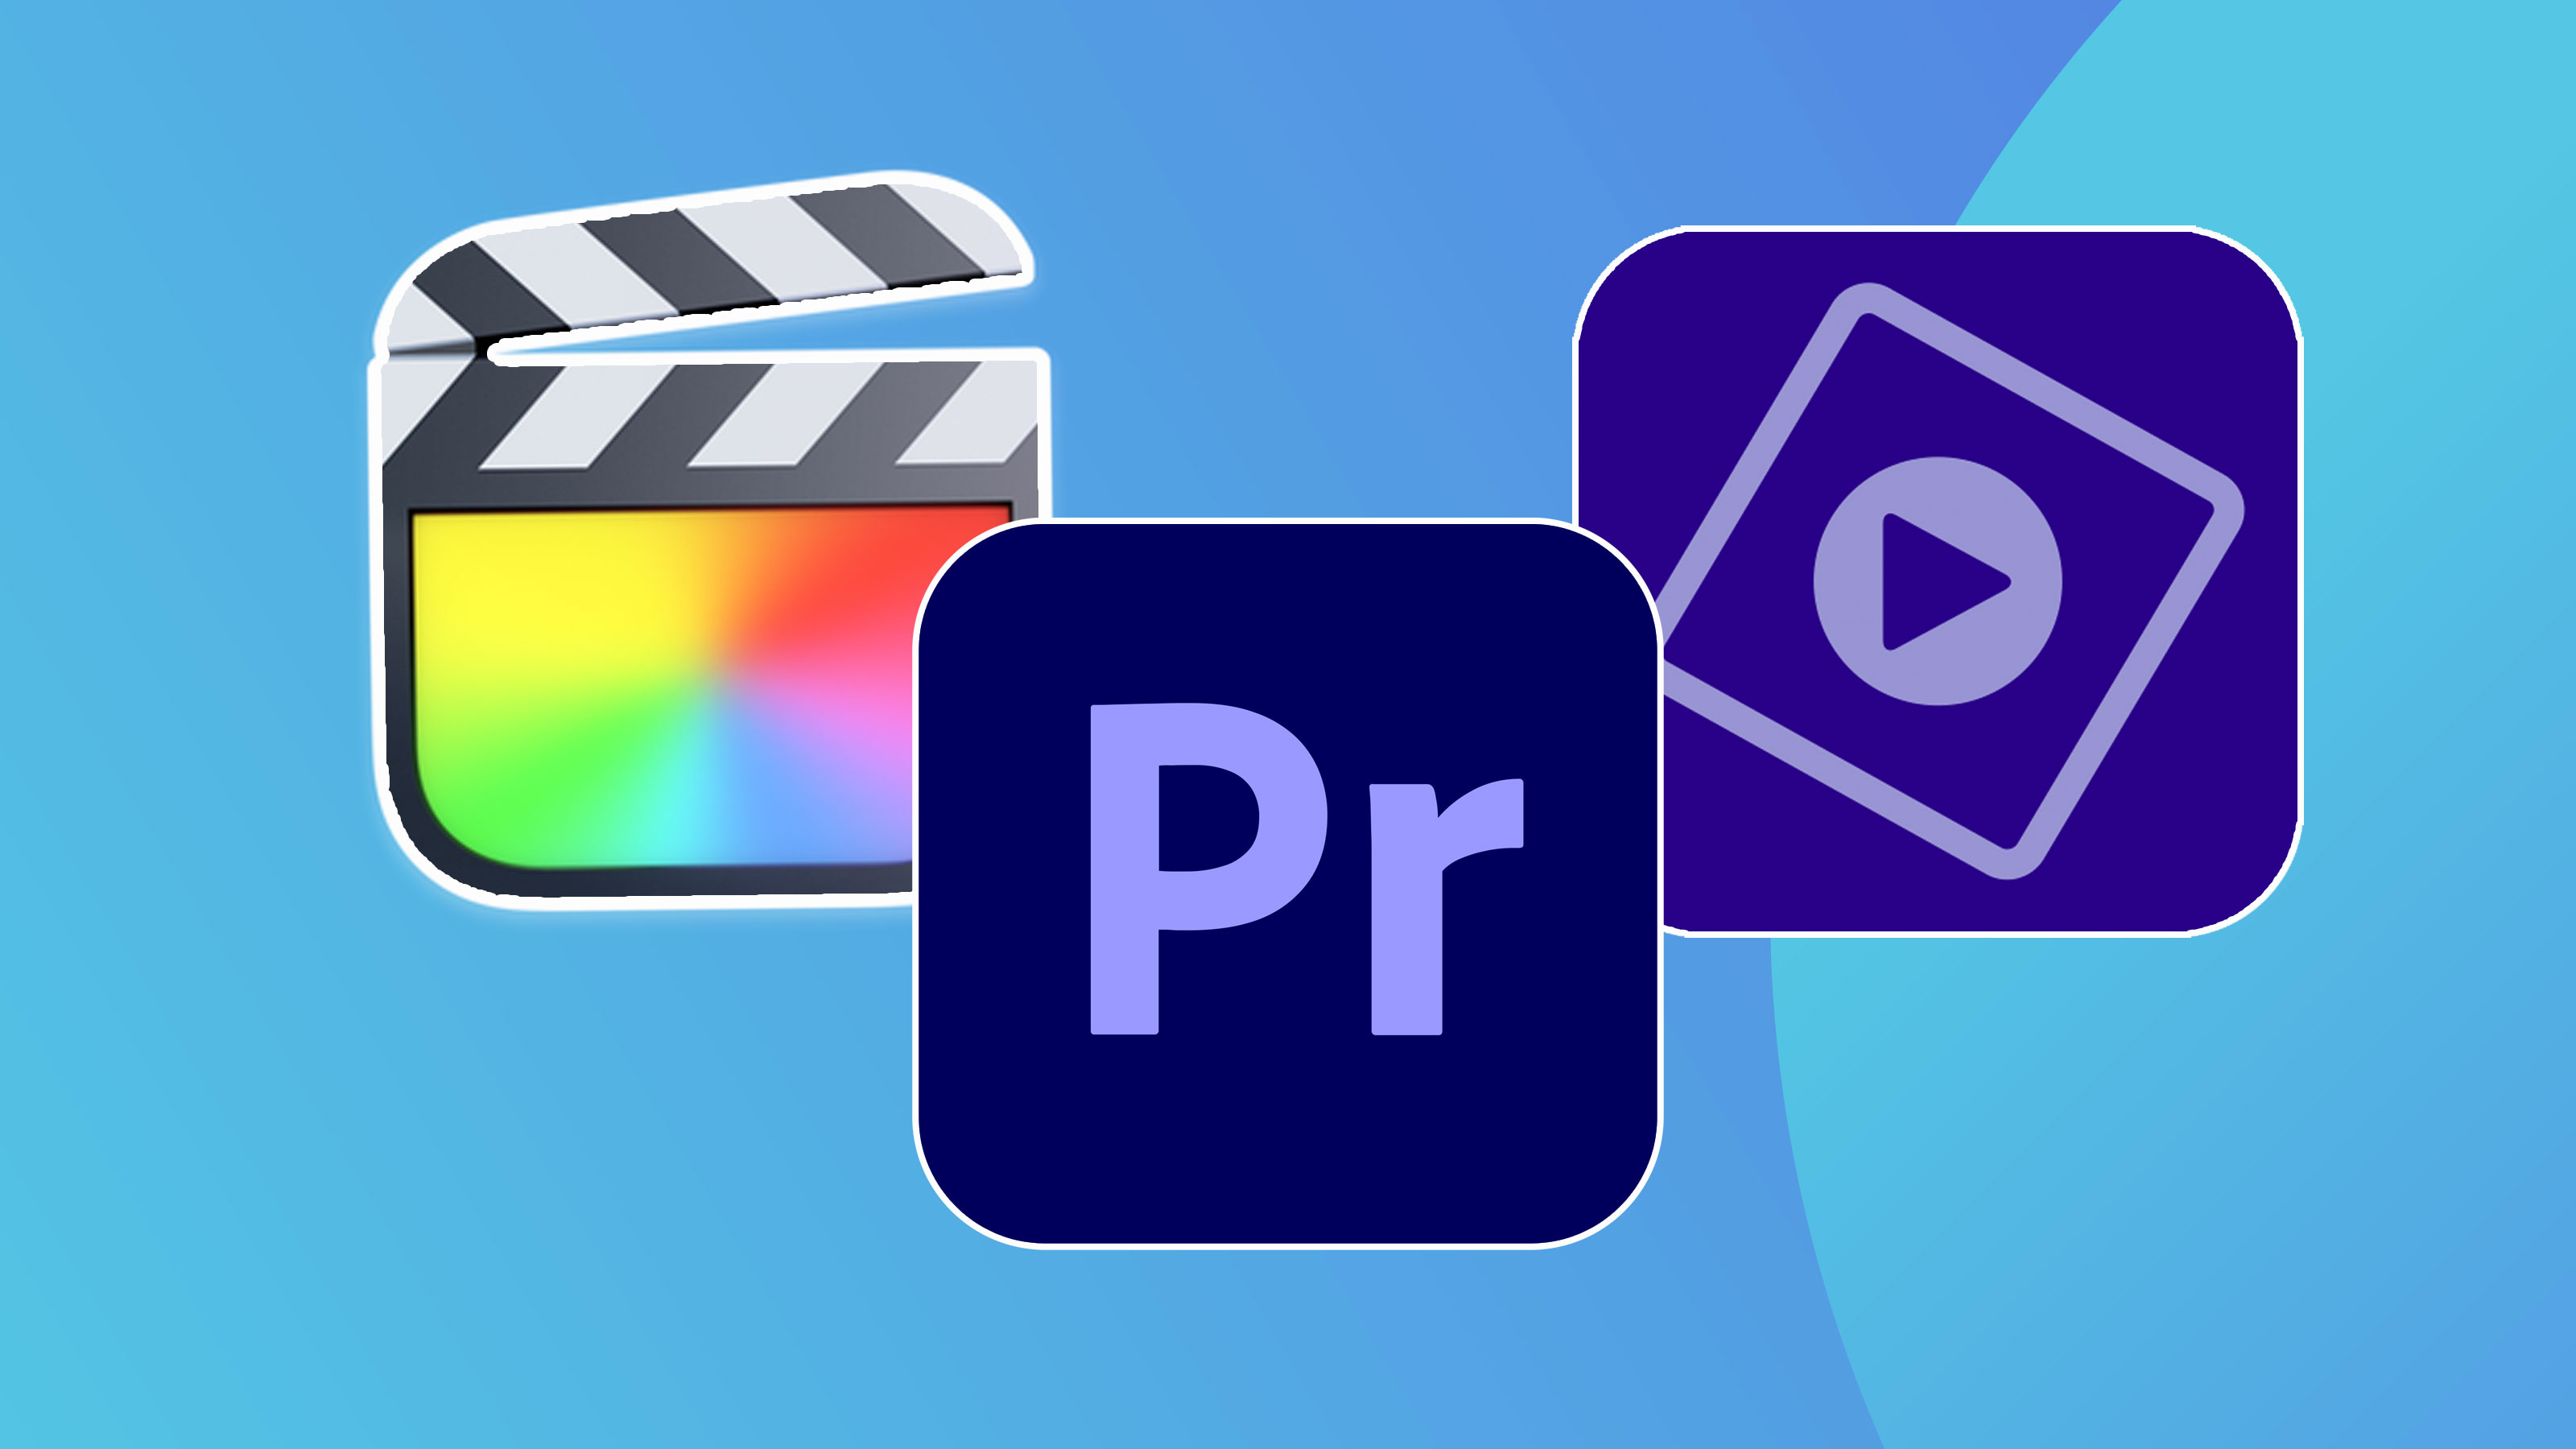 photo editing software logo